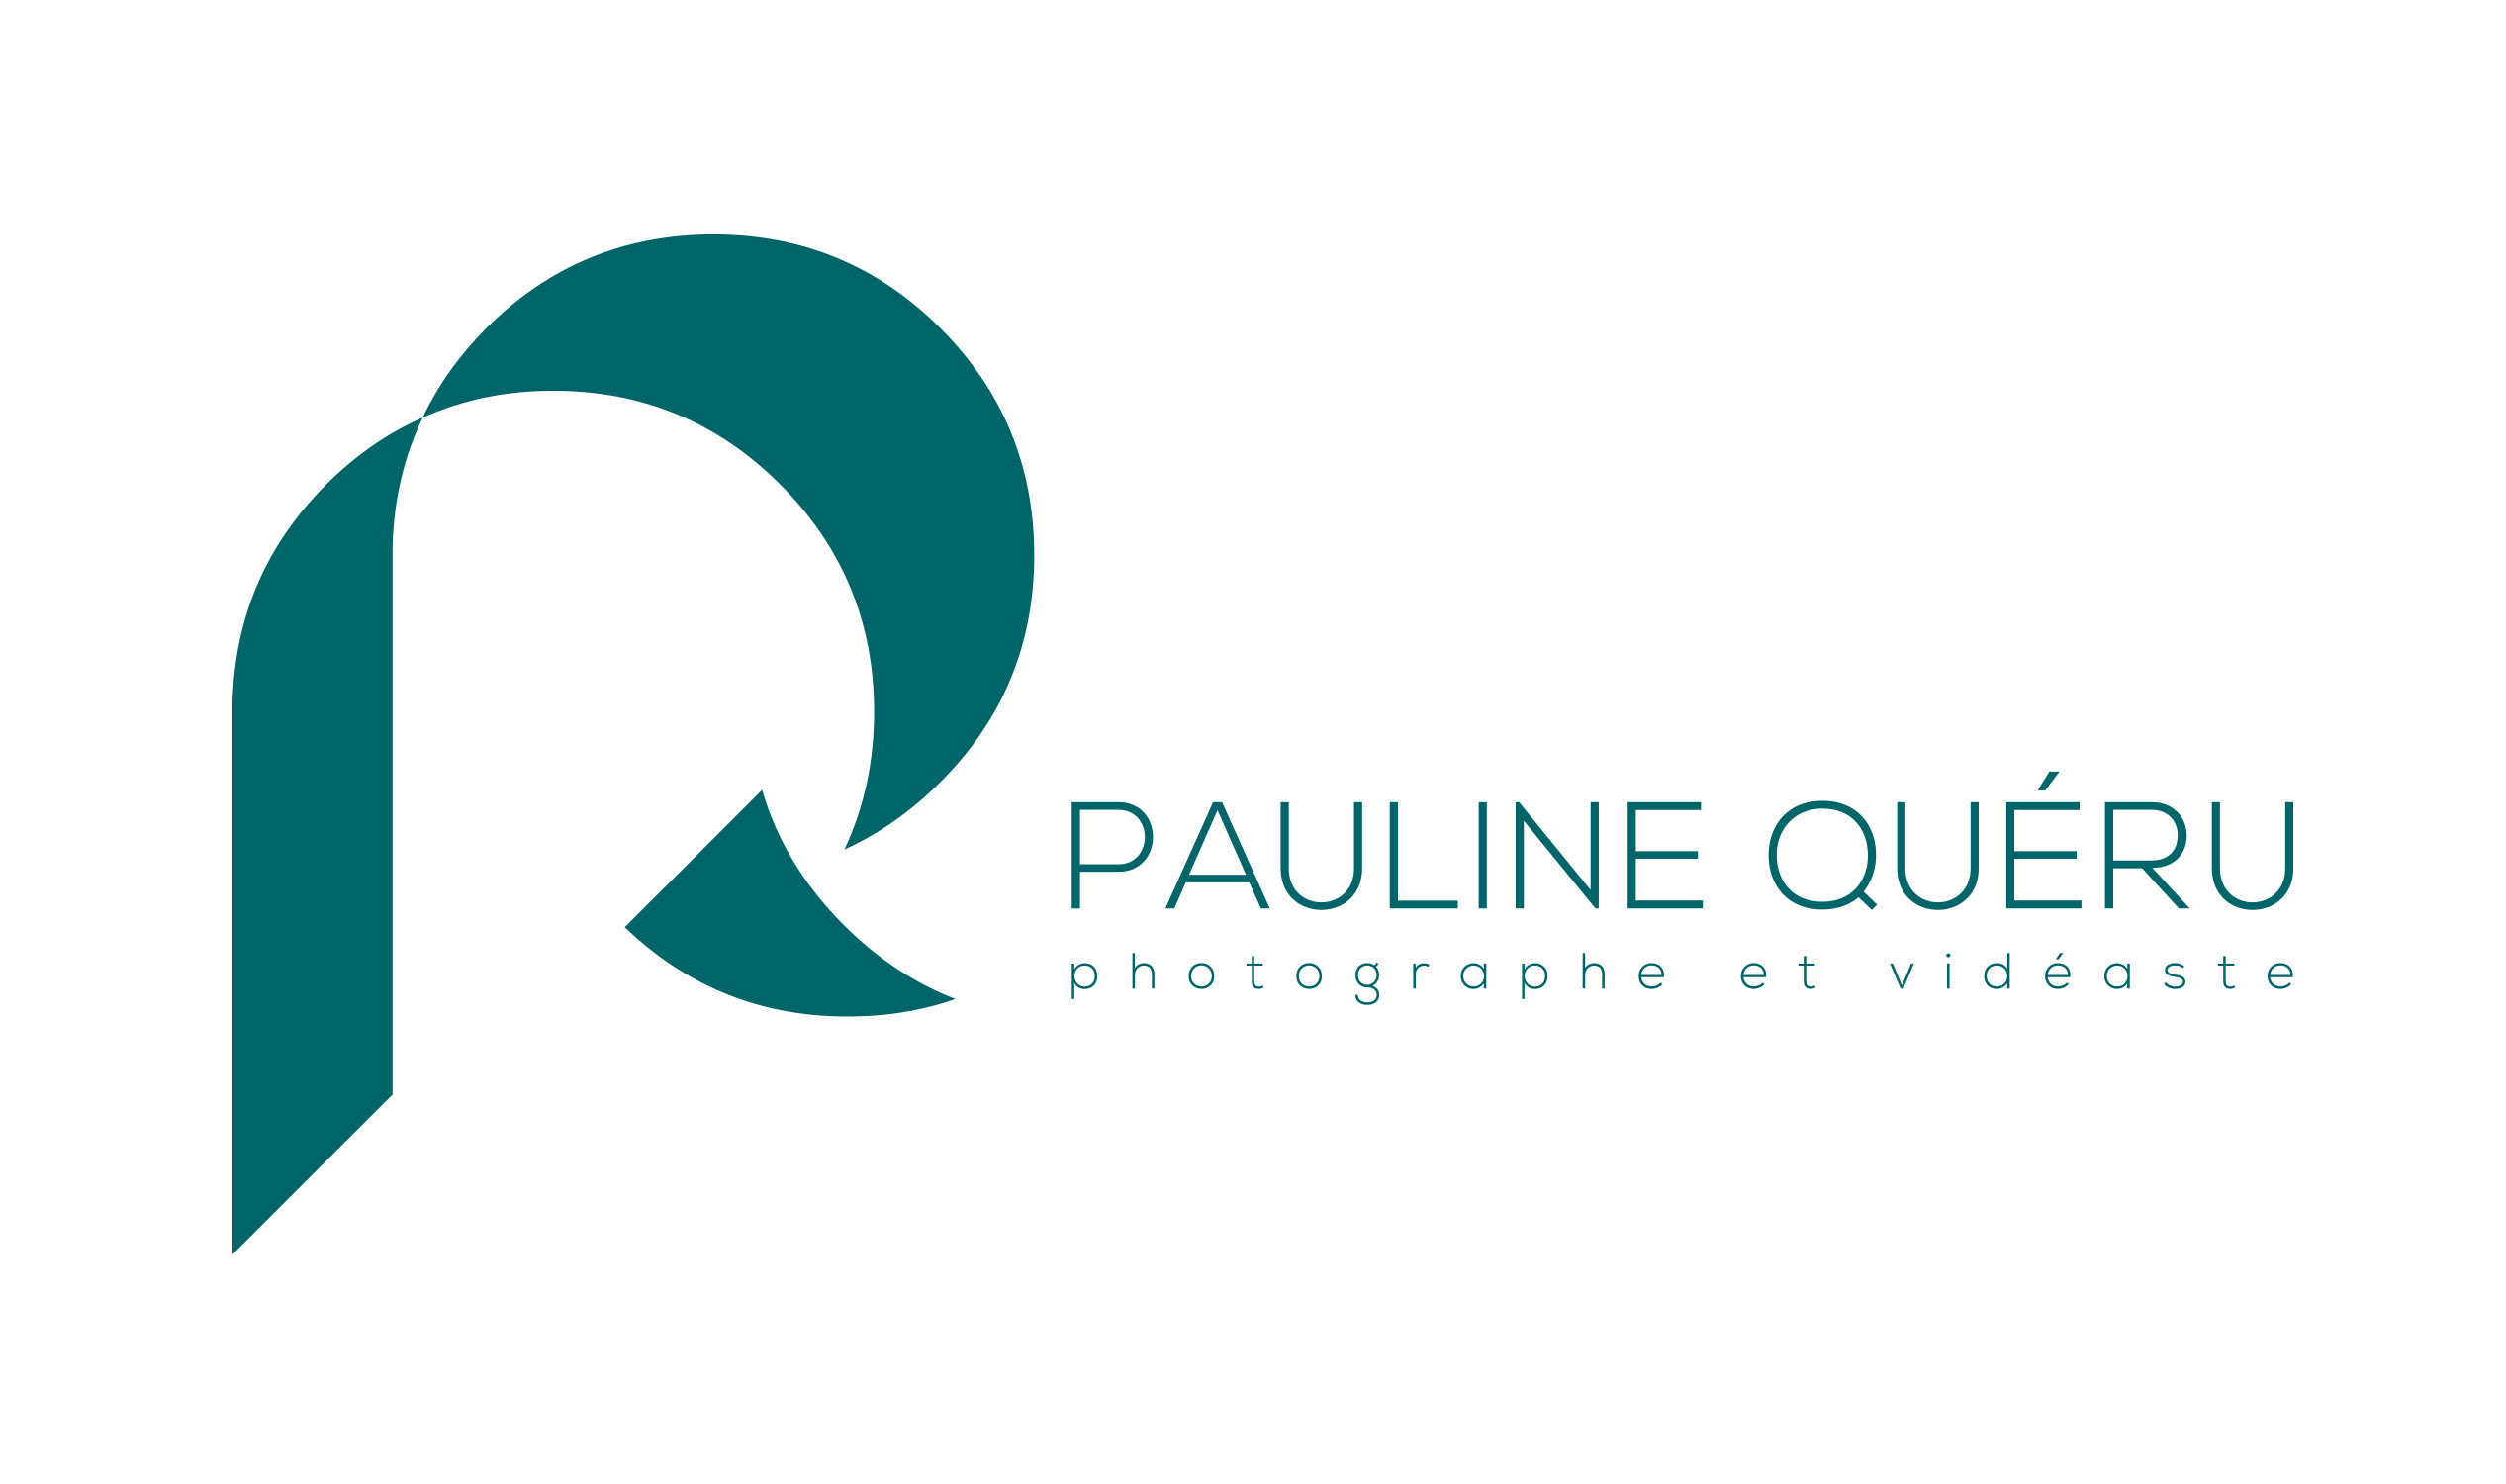 Pauline Queru